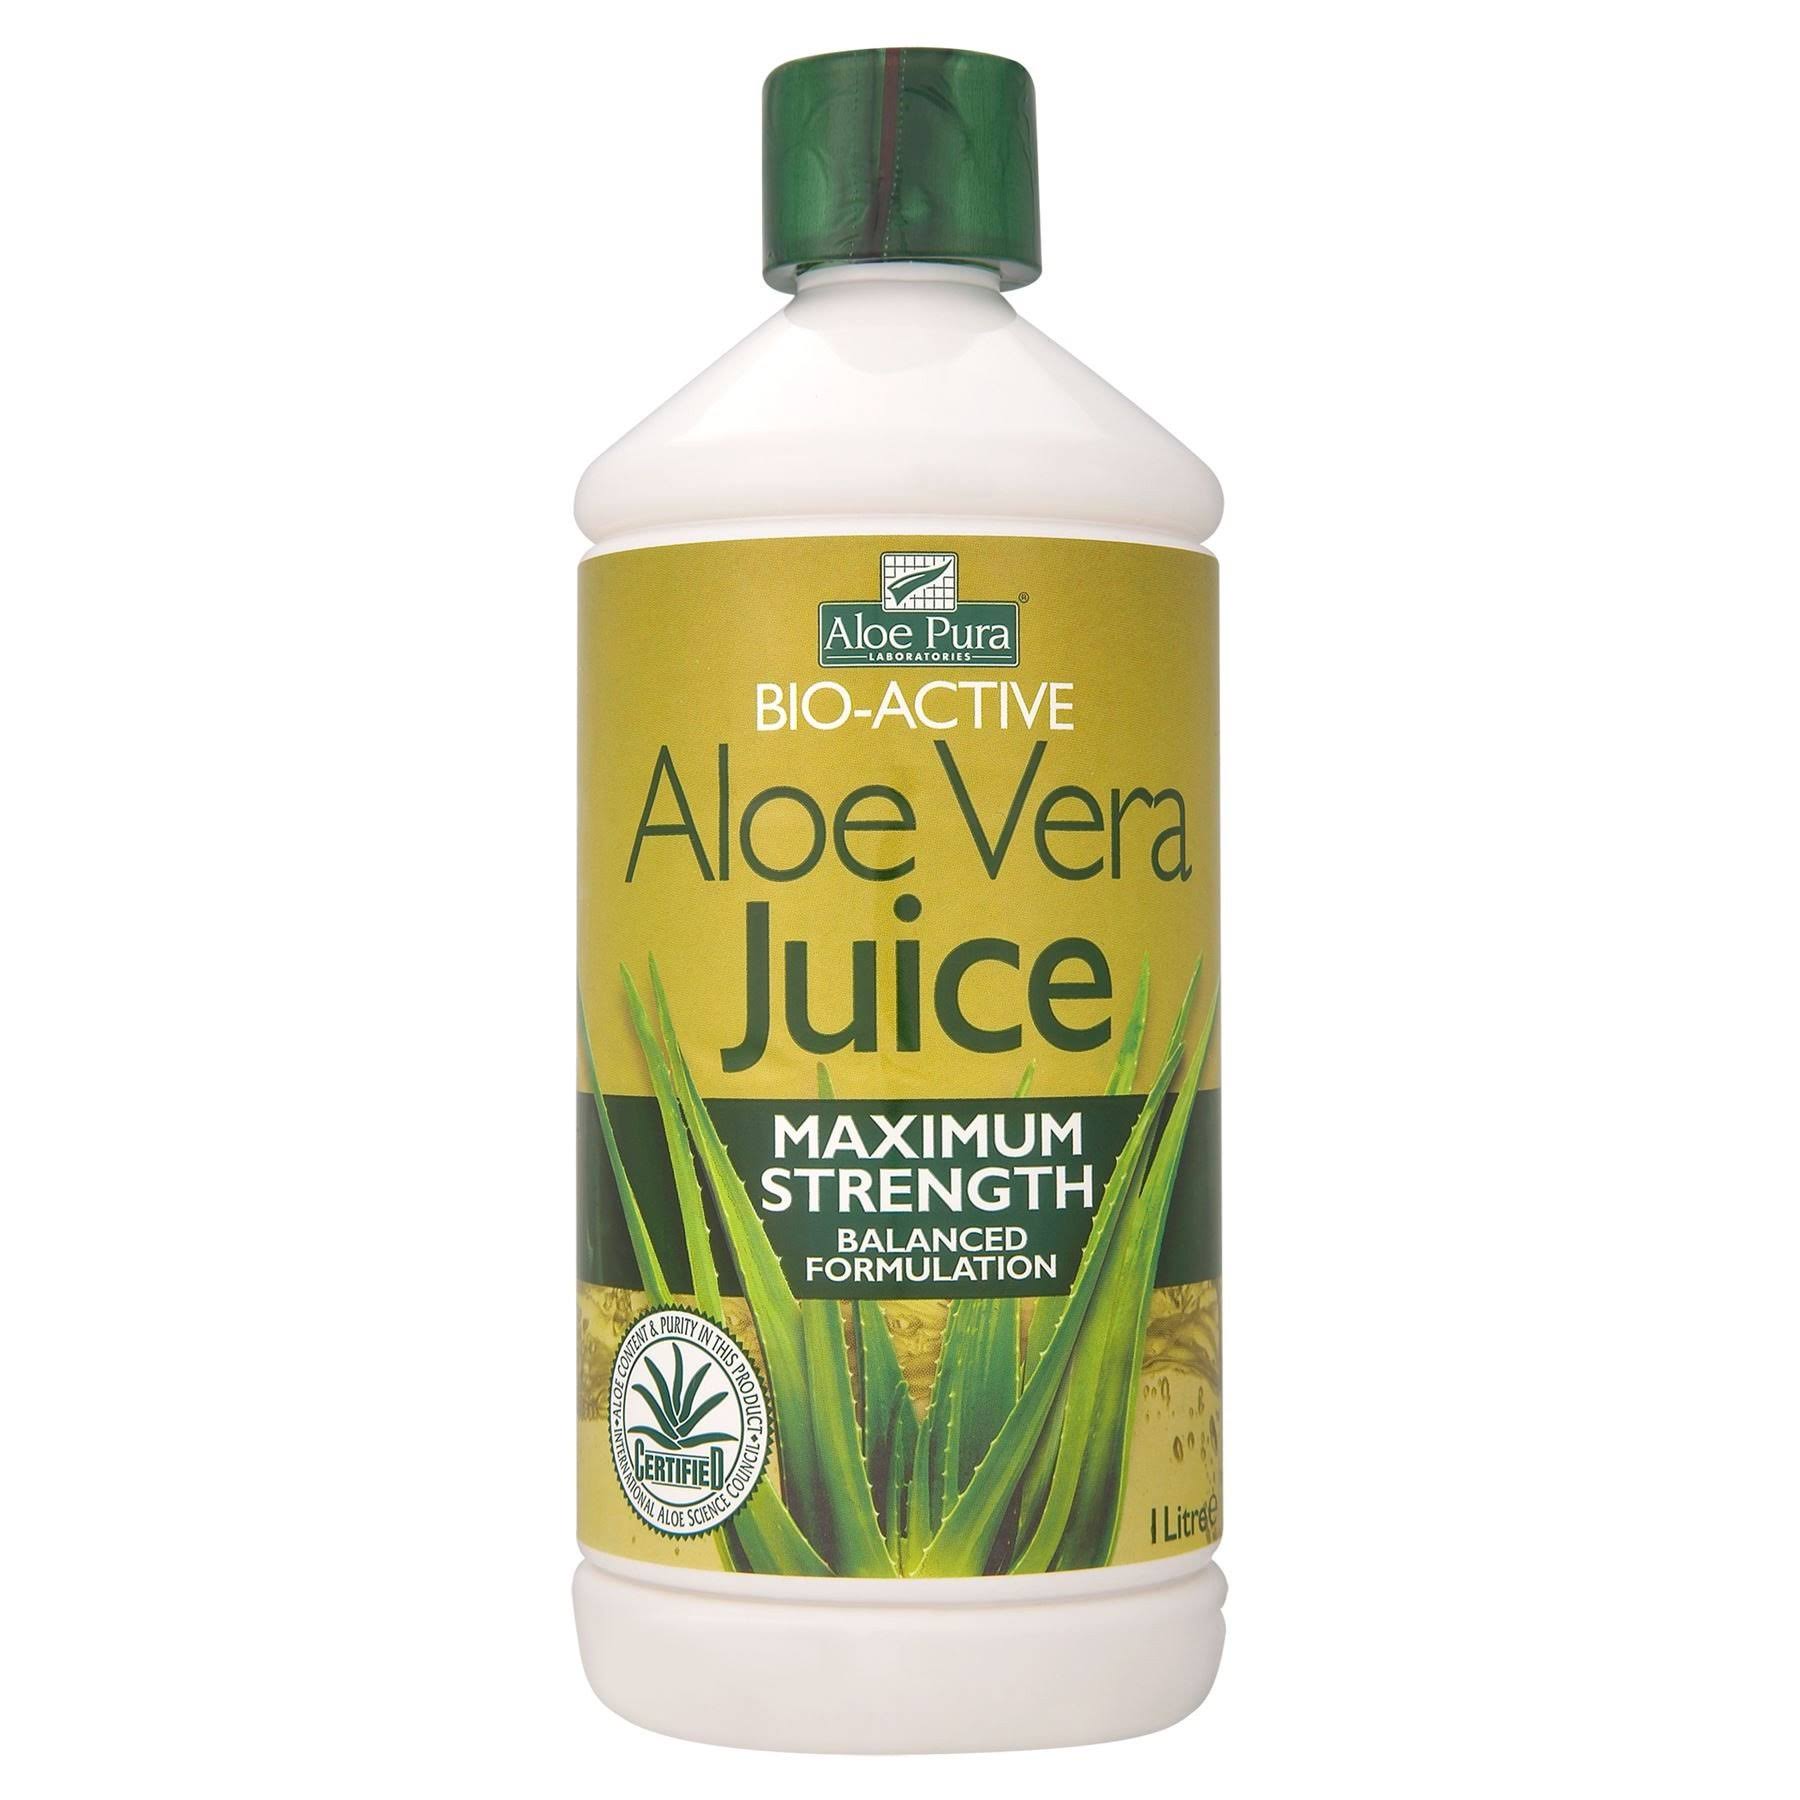 Aloe Pura Aloe Vera Juice Maximum Strength 1 Litre